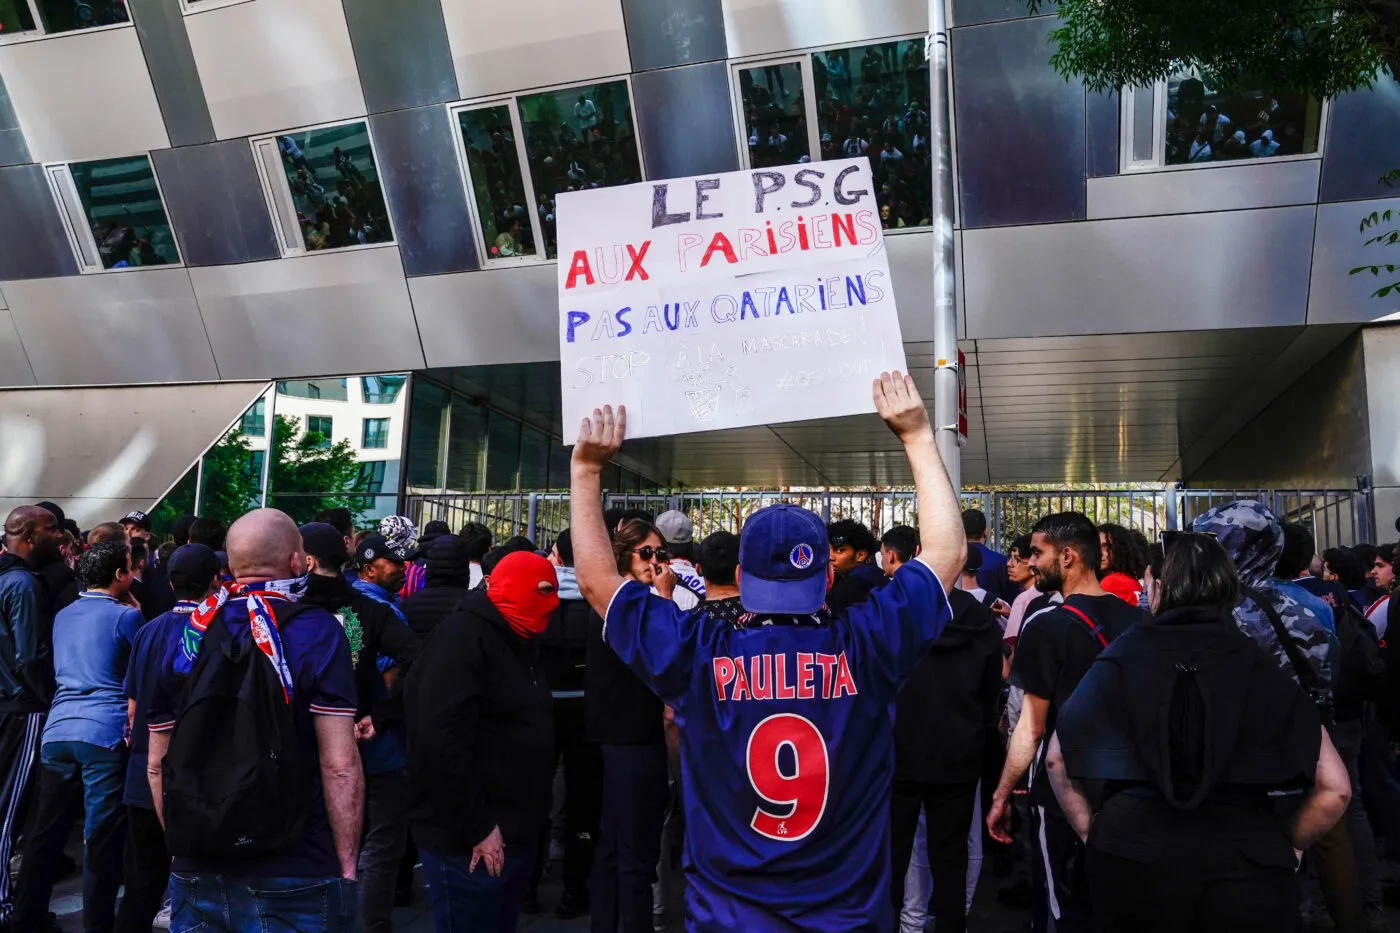 Le CUP boycotte le PSG « jusqu&rsquo;à nouvel ordre<span style="font-size:50%">&nbsp;</span>»